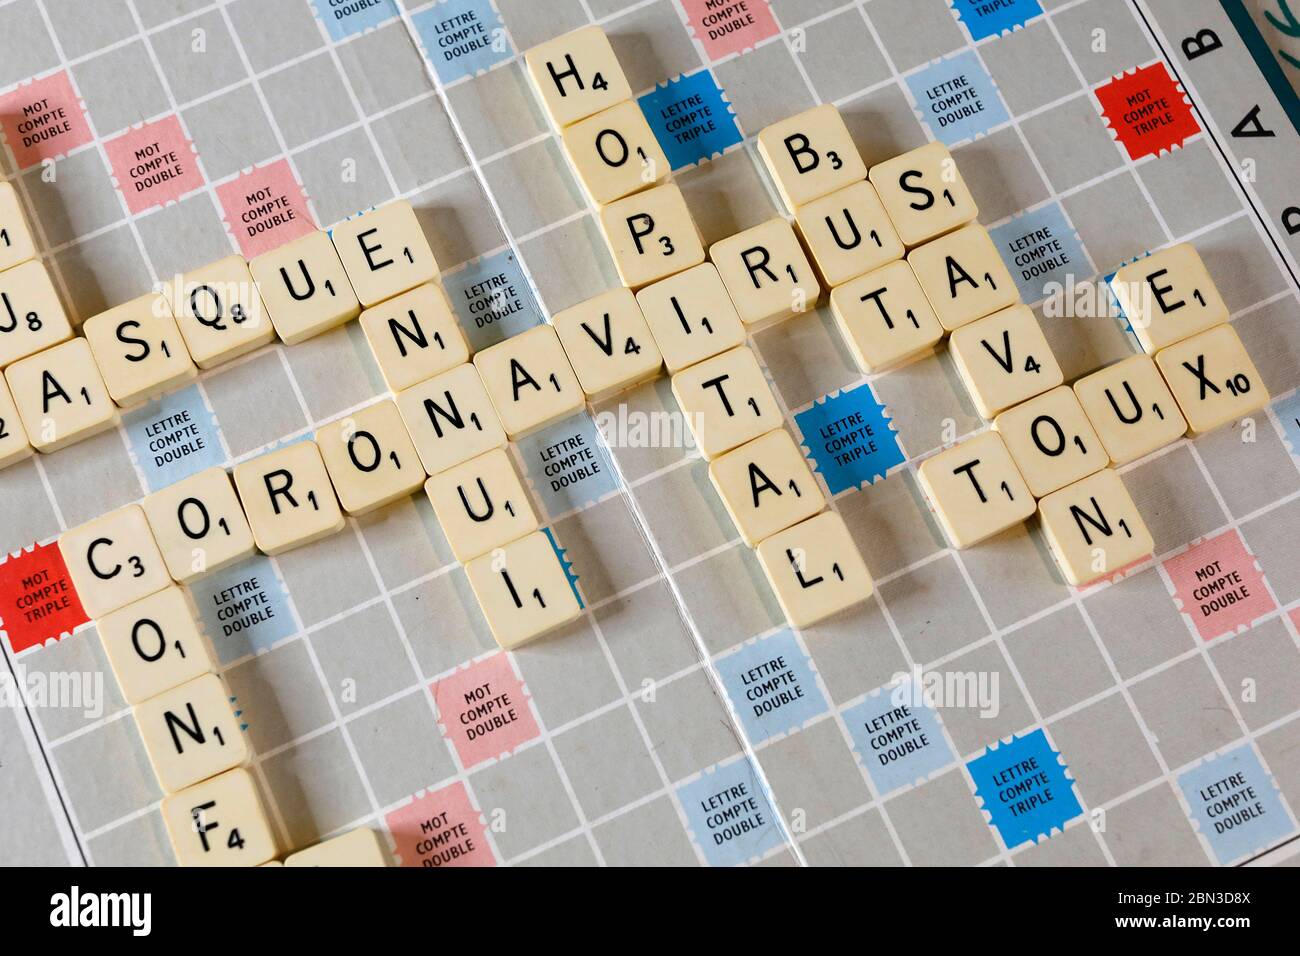 Gioco di Scrabble a eure, francia durante l'epidemia di covid-19 Foto Stock